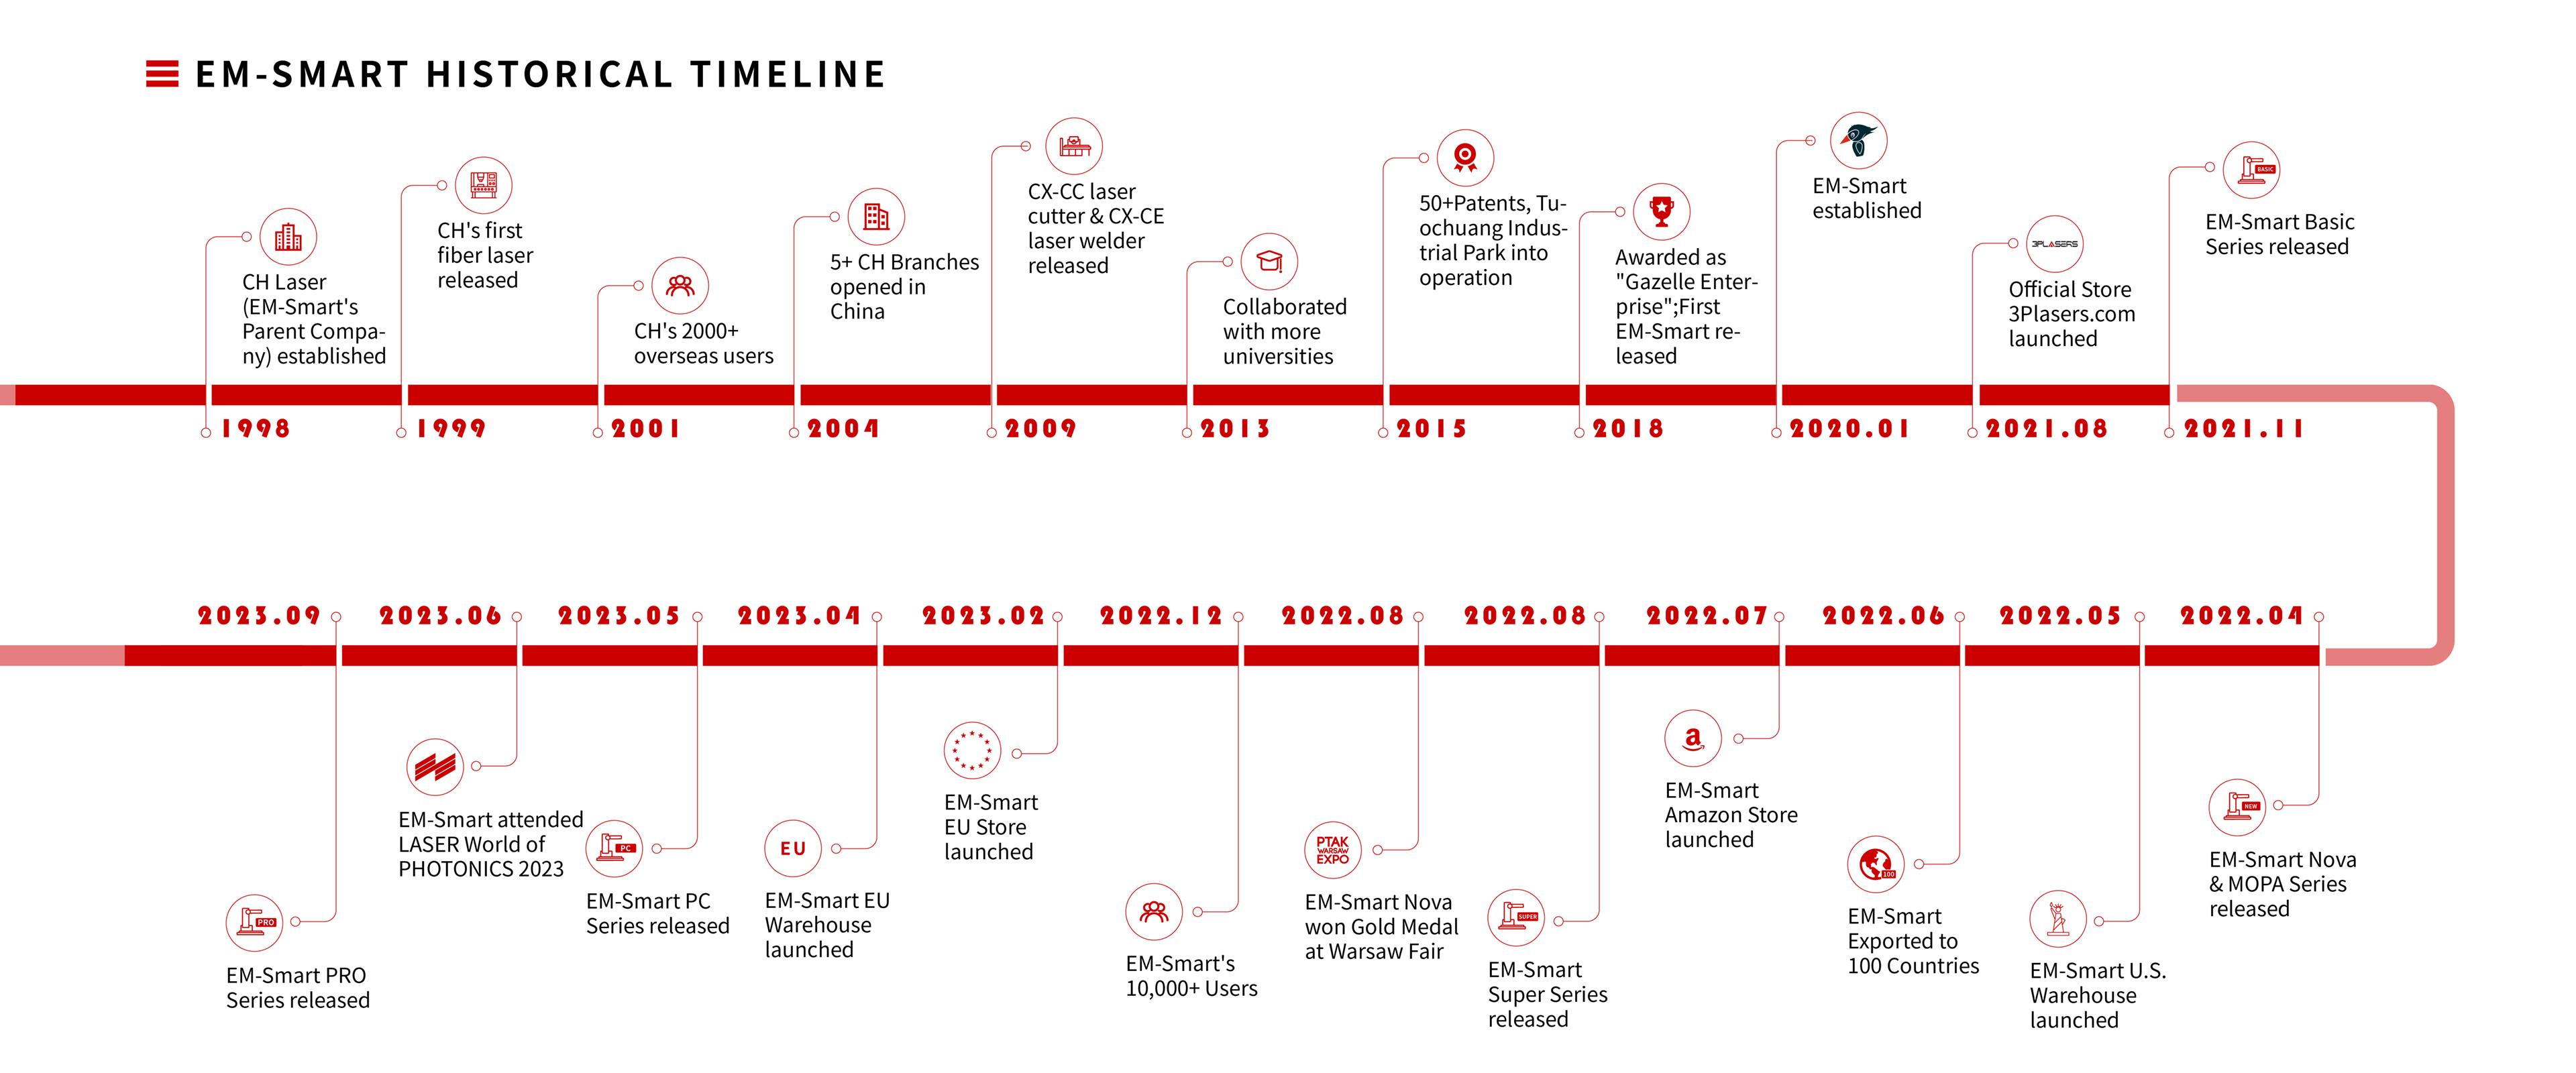 EM-Smart Historical Timeline